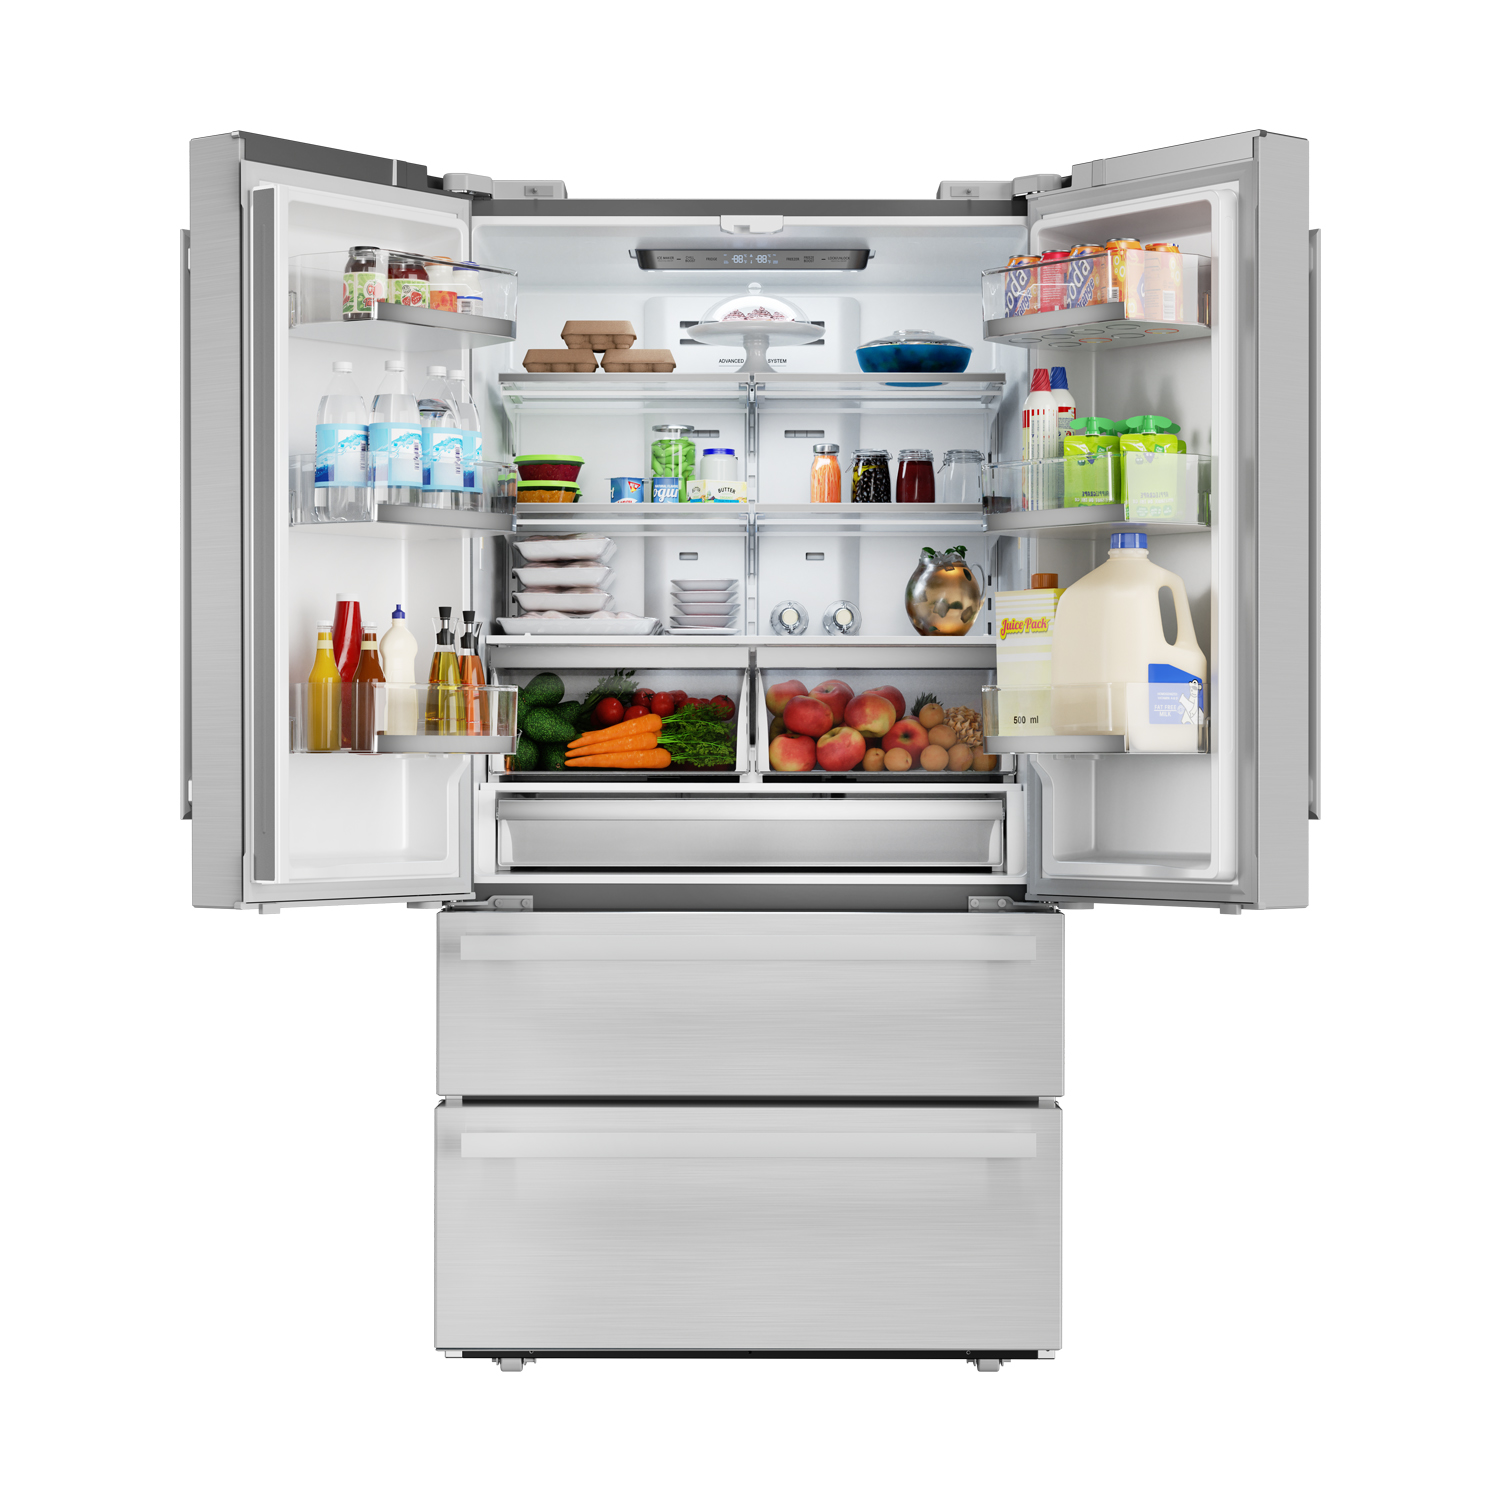 sharp refrigerator review